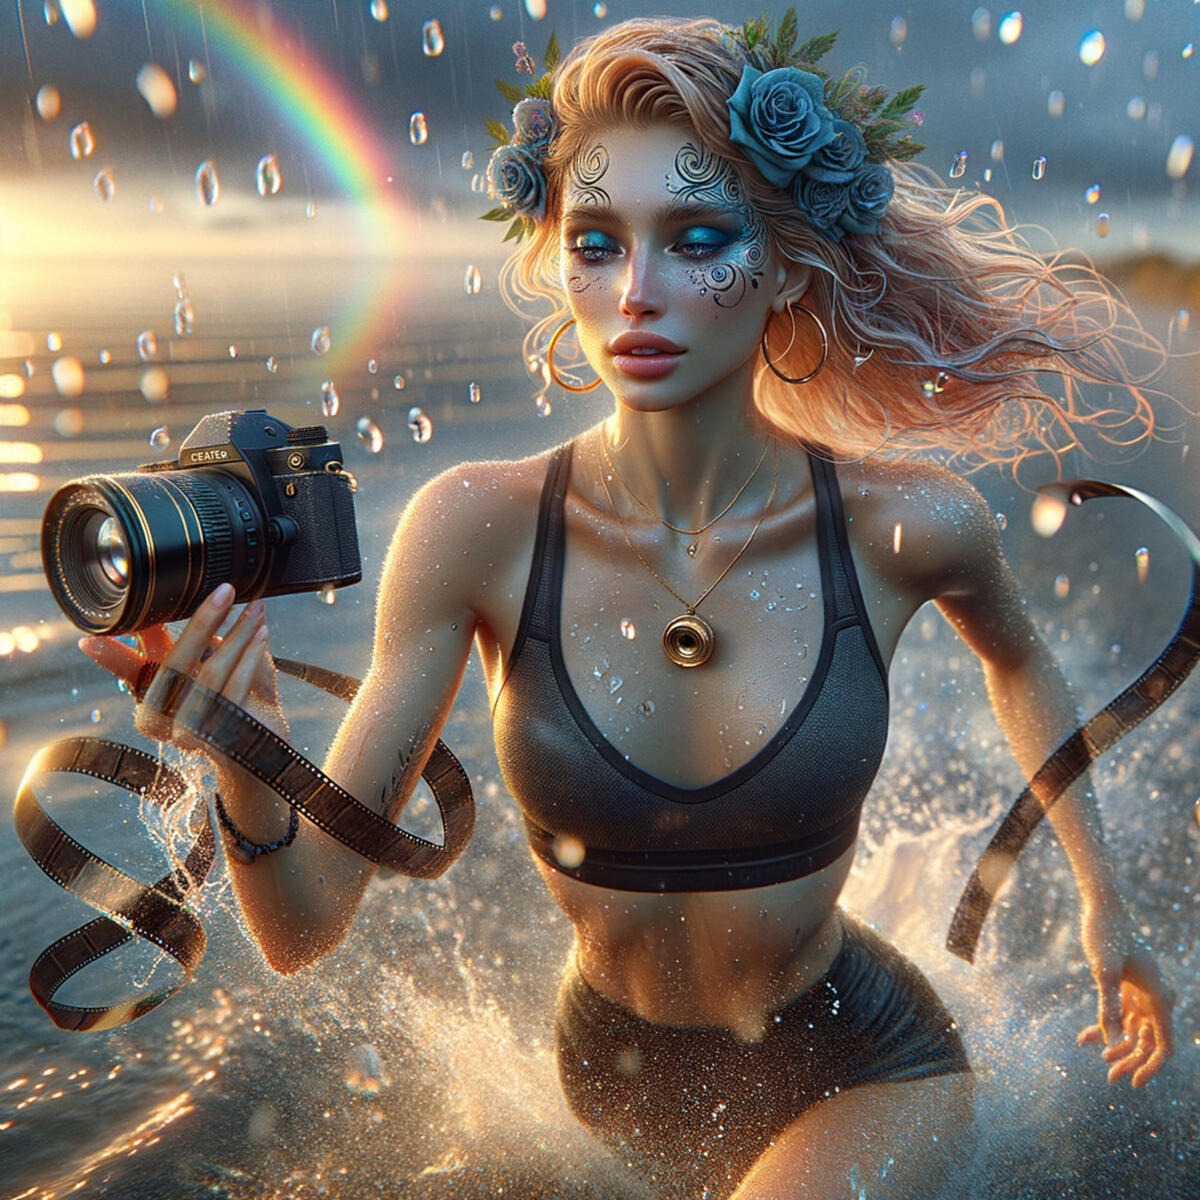 The girl photographer runs into the sea